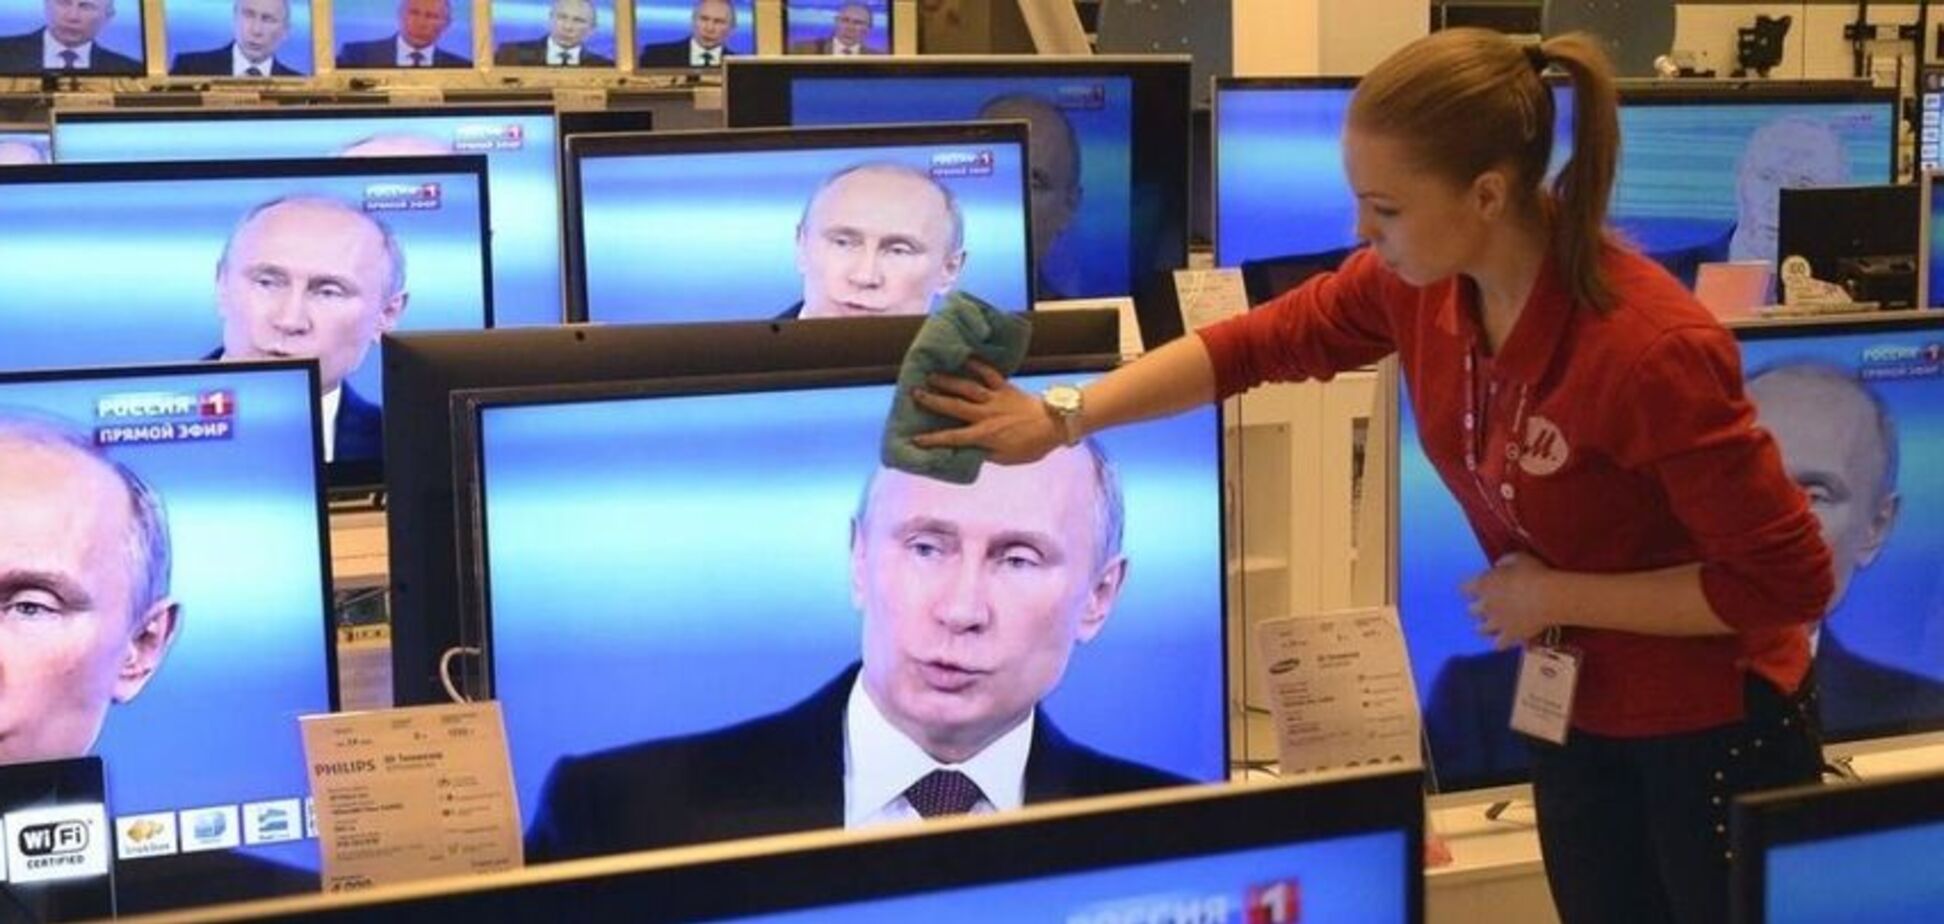 Поребрик News: россияне насчитали в Украине 85% фанатов Путина